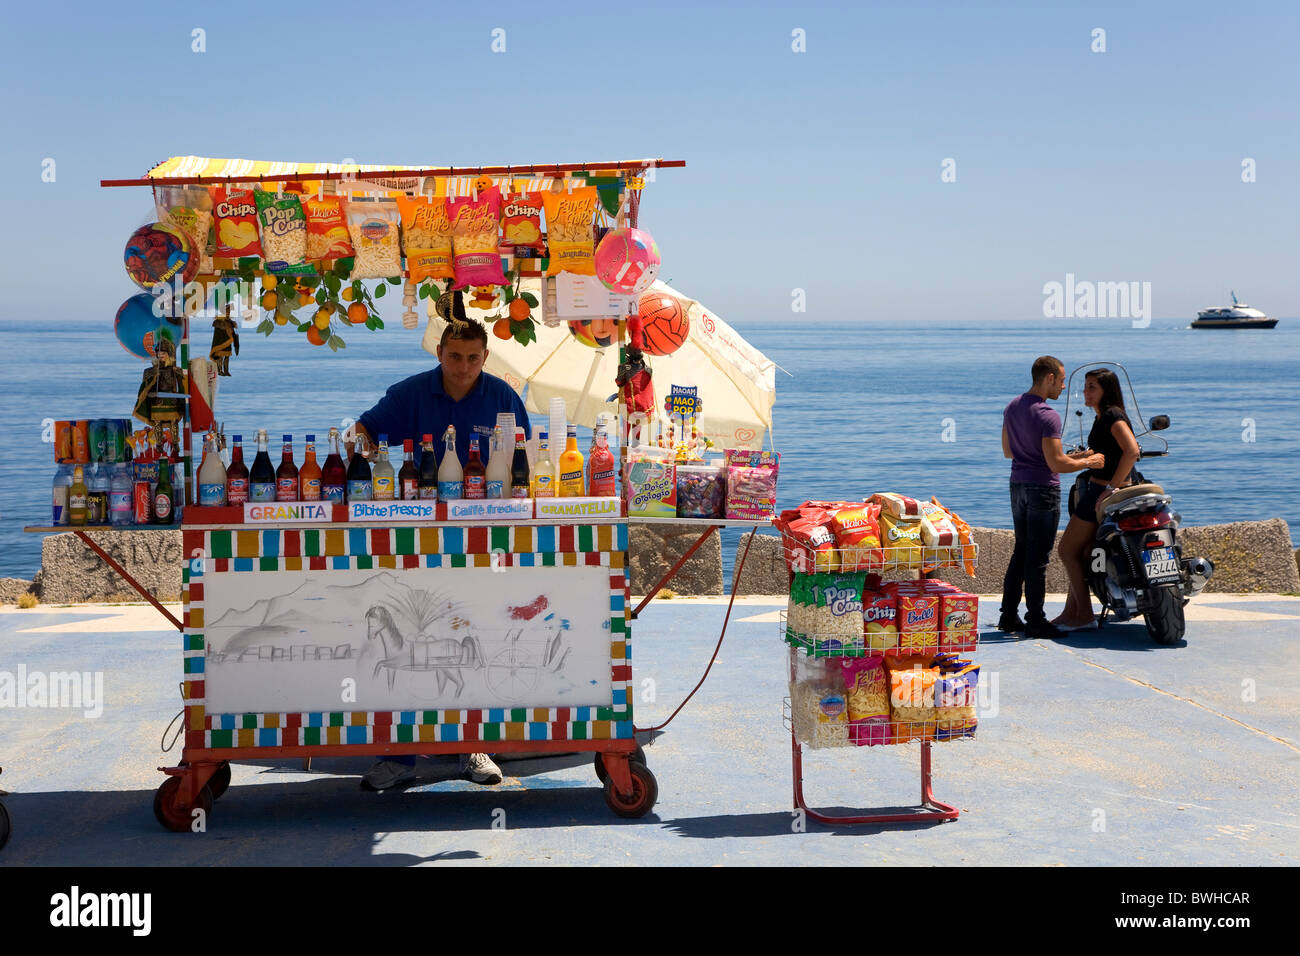 Kiosco móvil, pareja, ciclomotores en el puerto, Palermo, Sicilia, Italia, Europa Foto de stock